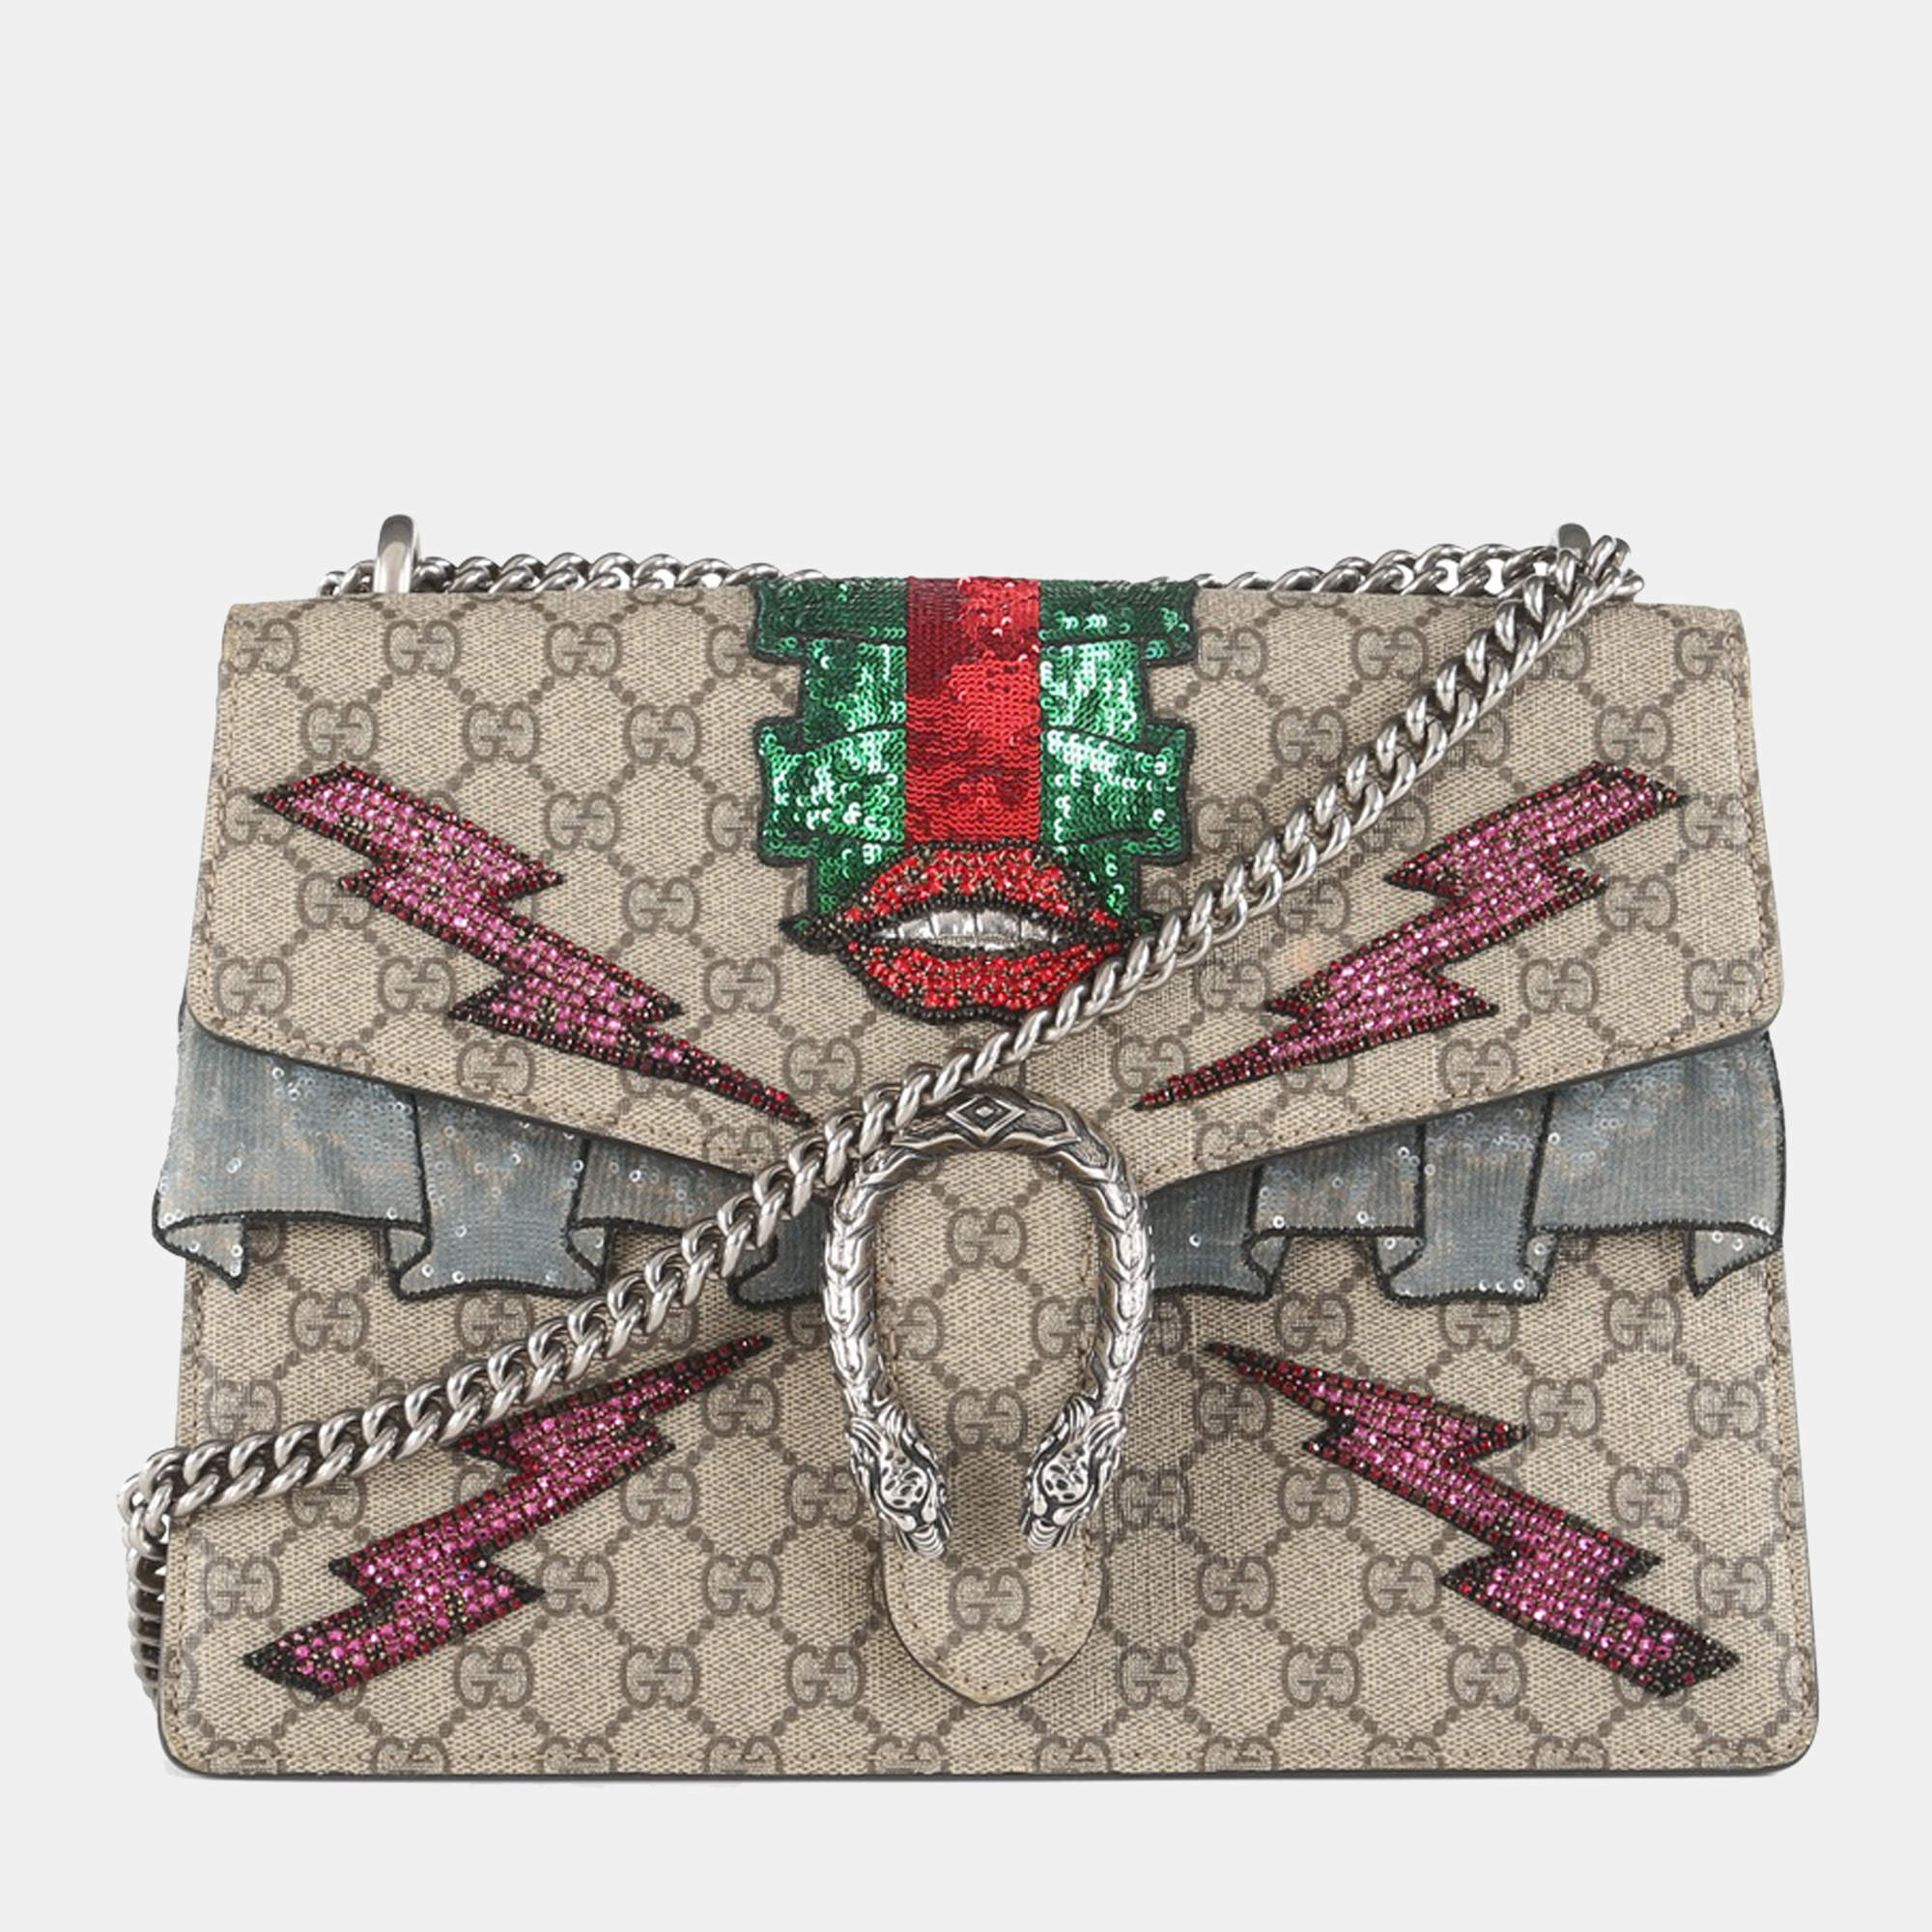 GUCCI Dionysus Medium GG Supreme Embroidered Shoulder Bag 400235 Beige